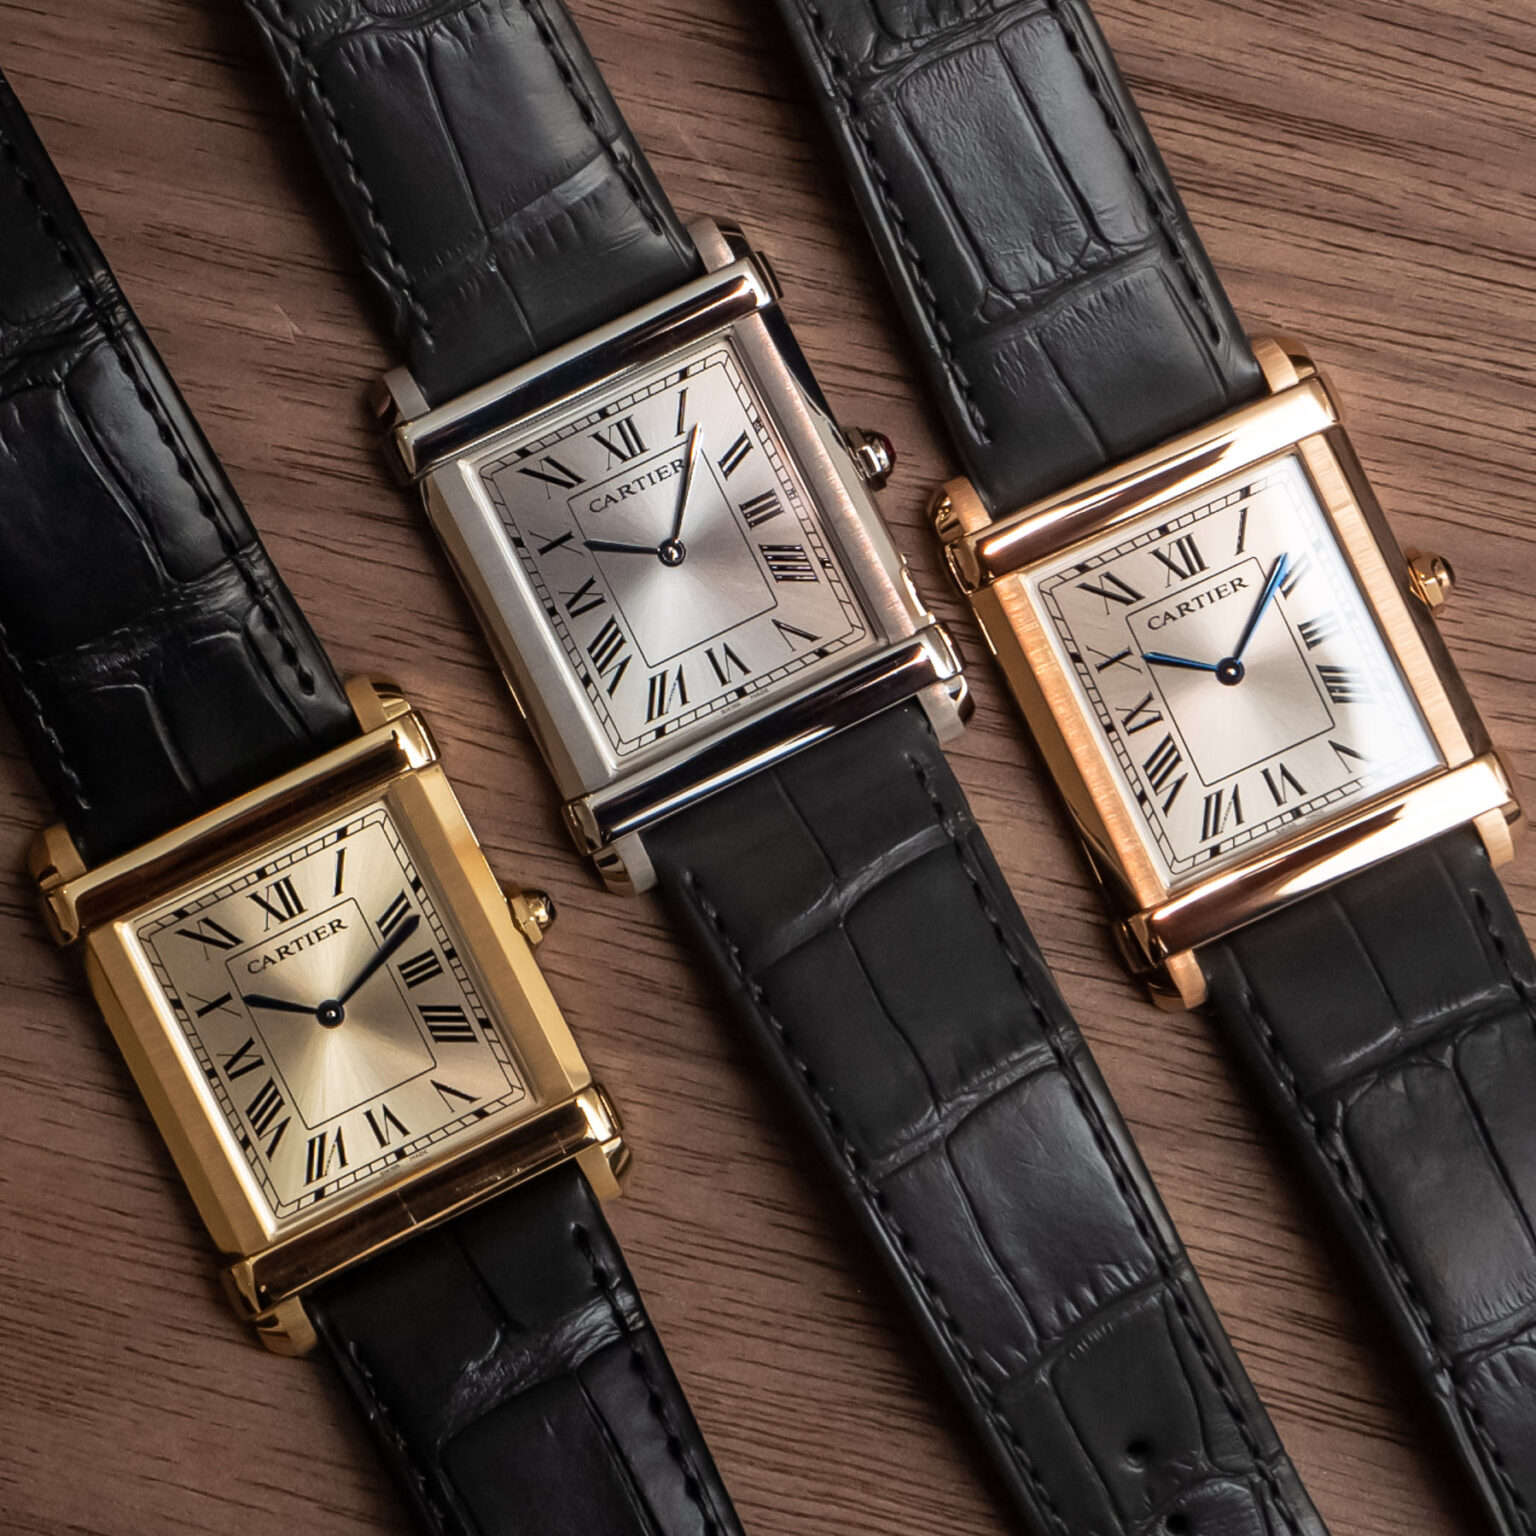 Cartier Replica Privé Tank Chinoise Uhrenkollektion haucht einem Klassiker neues Leben ein